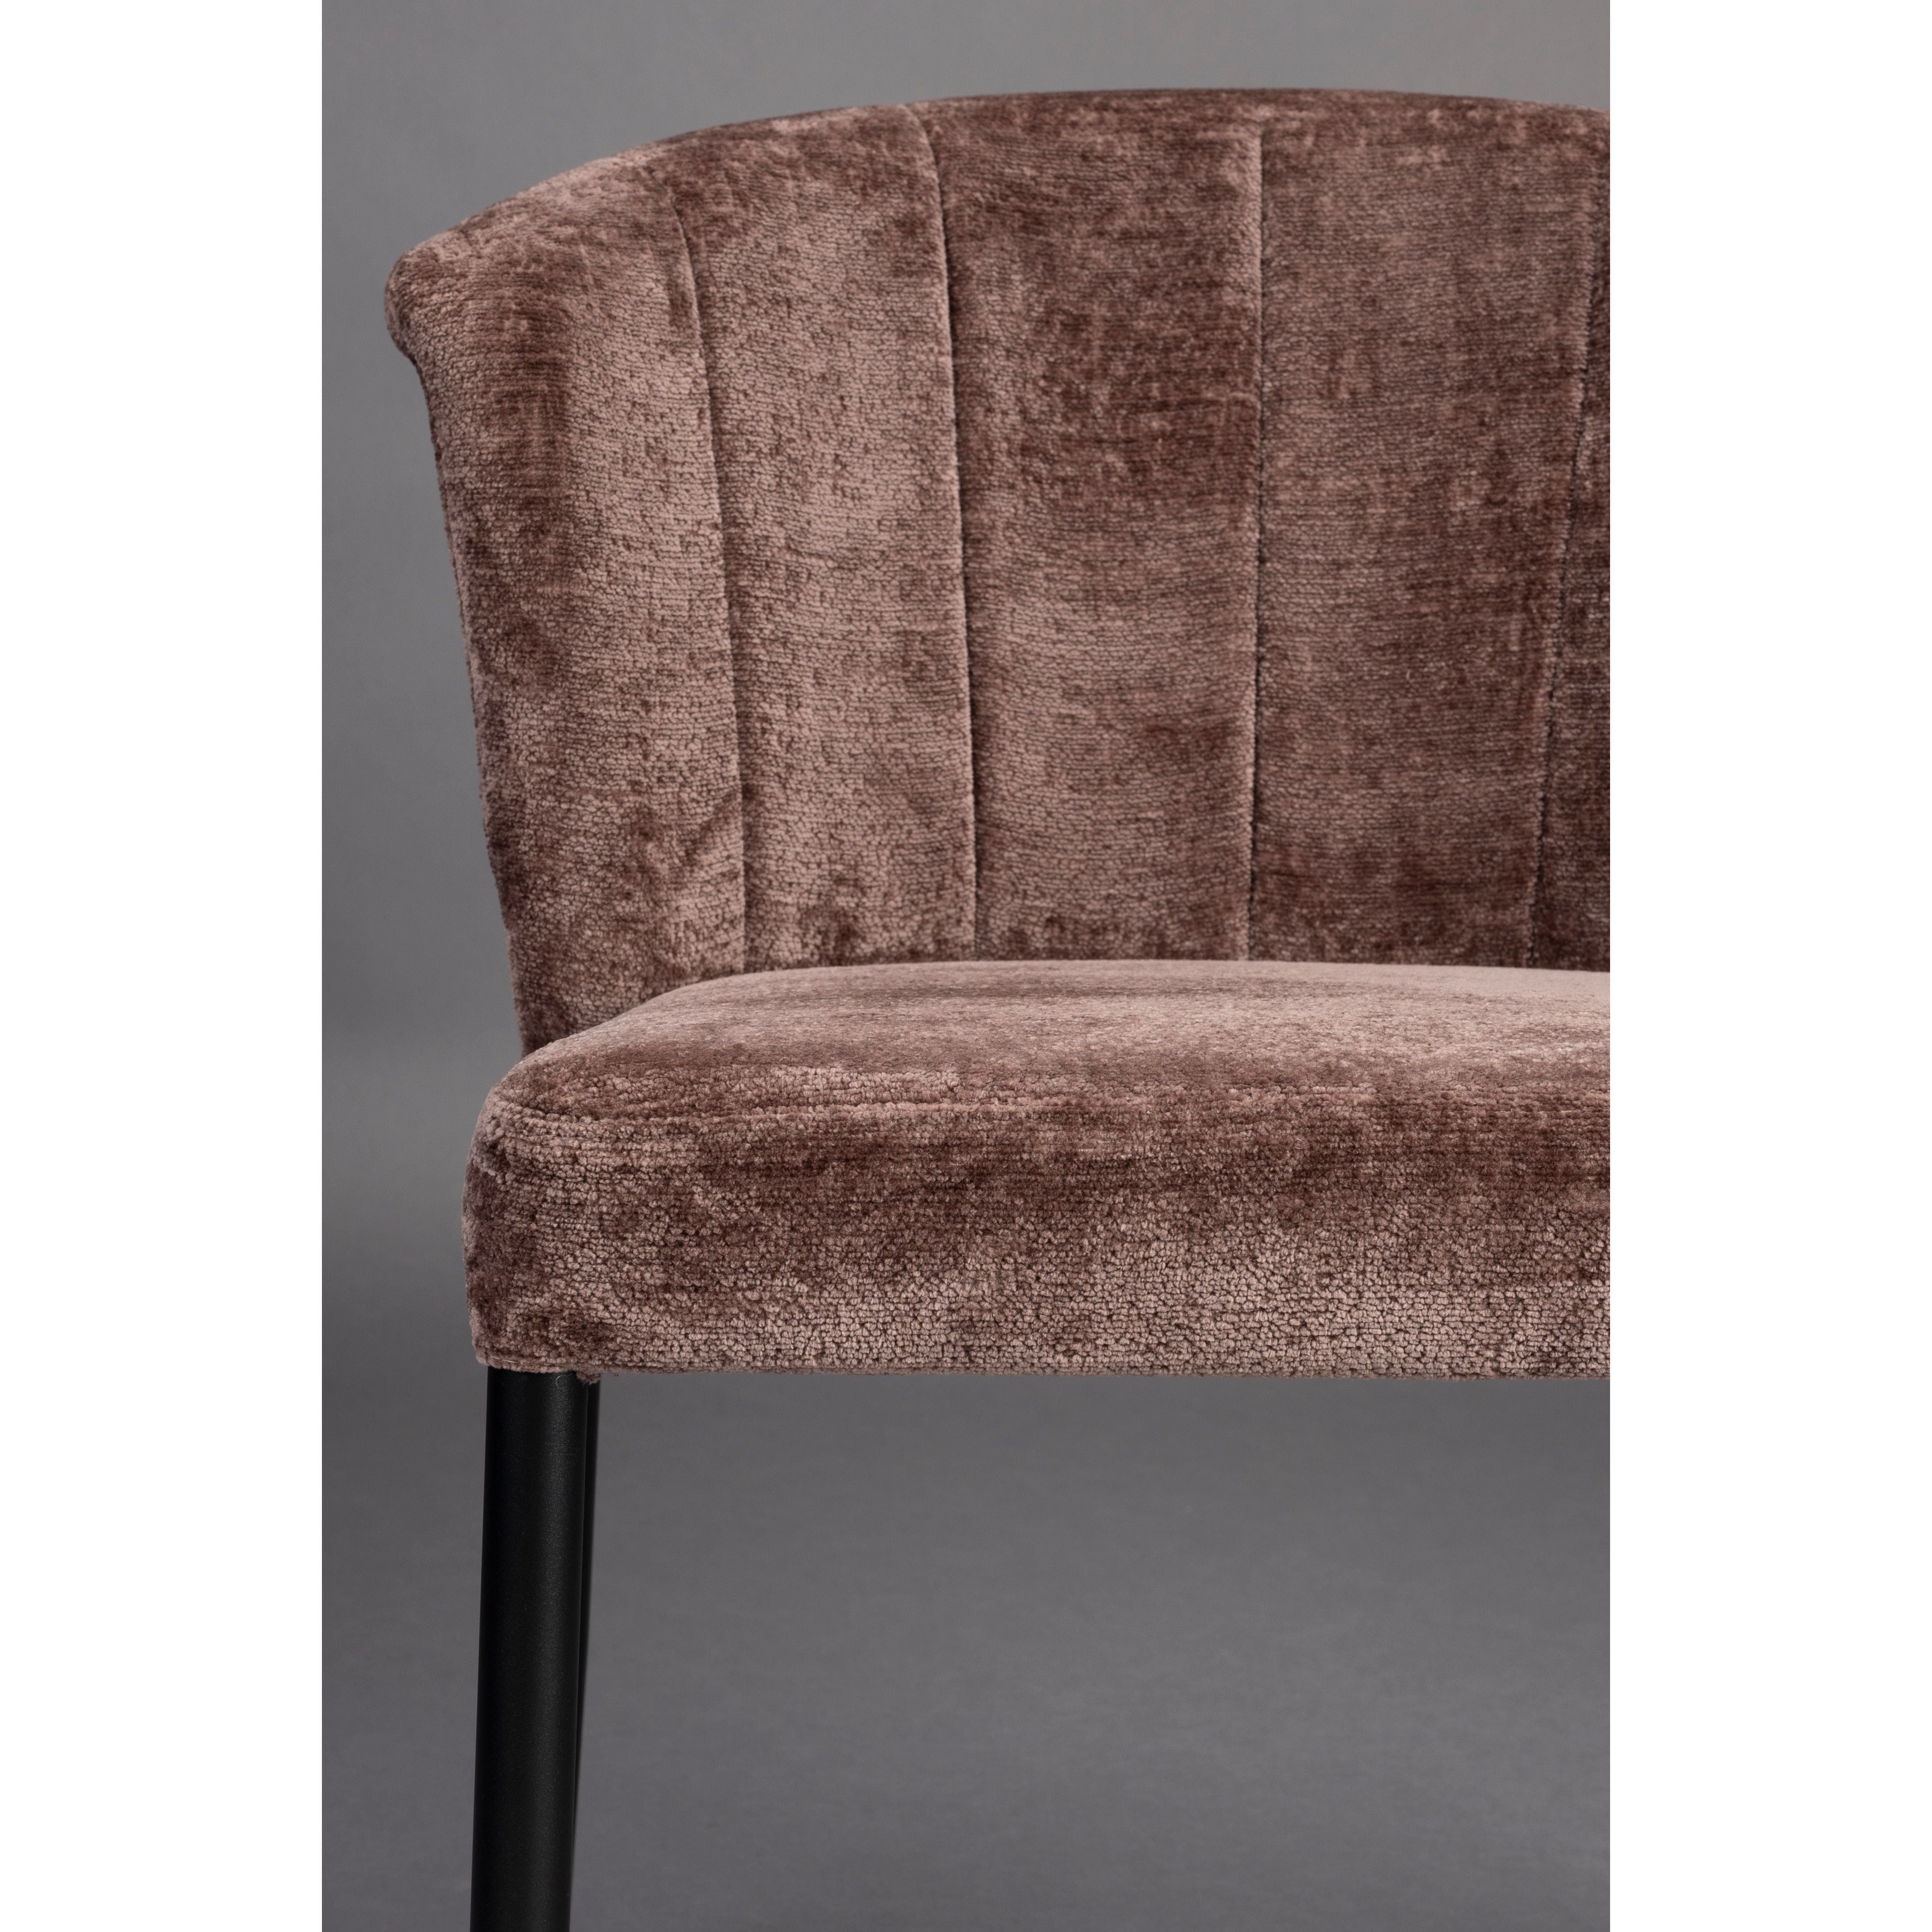 Chair georgia purple